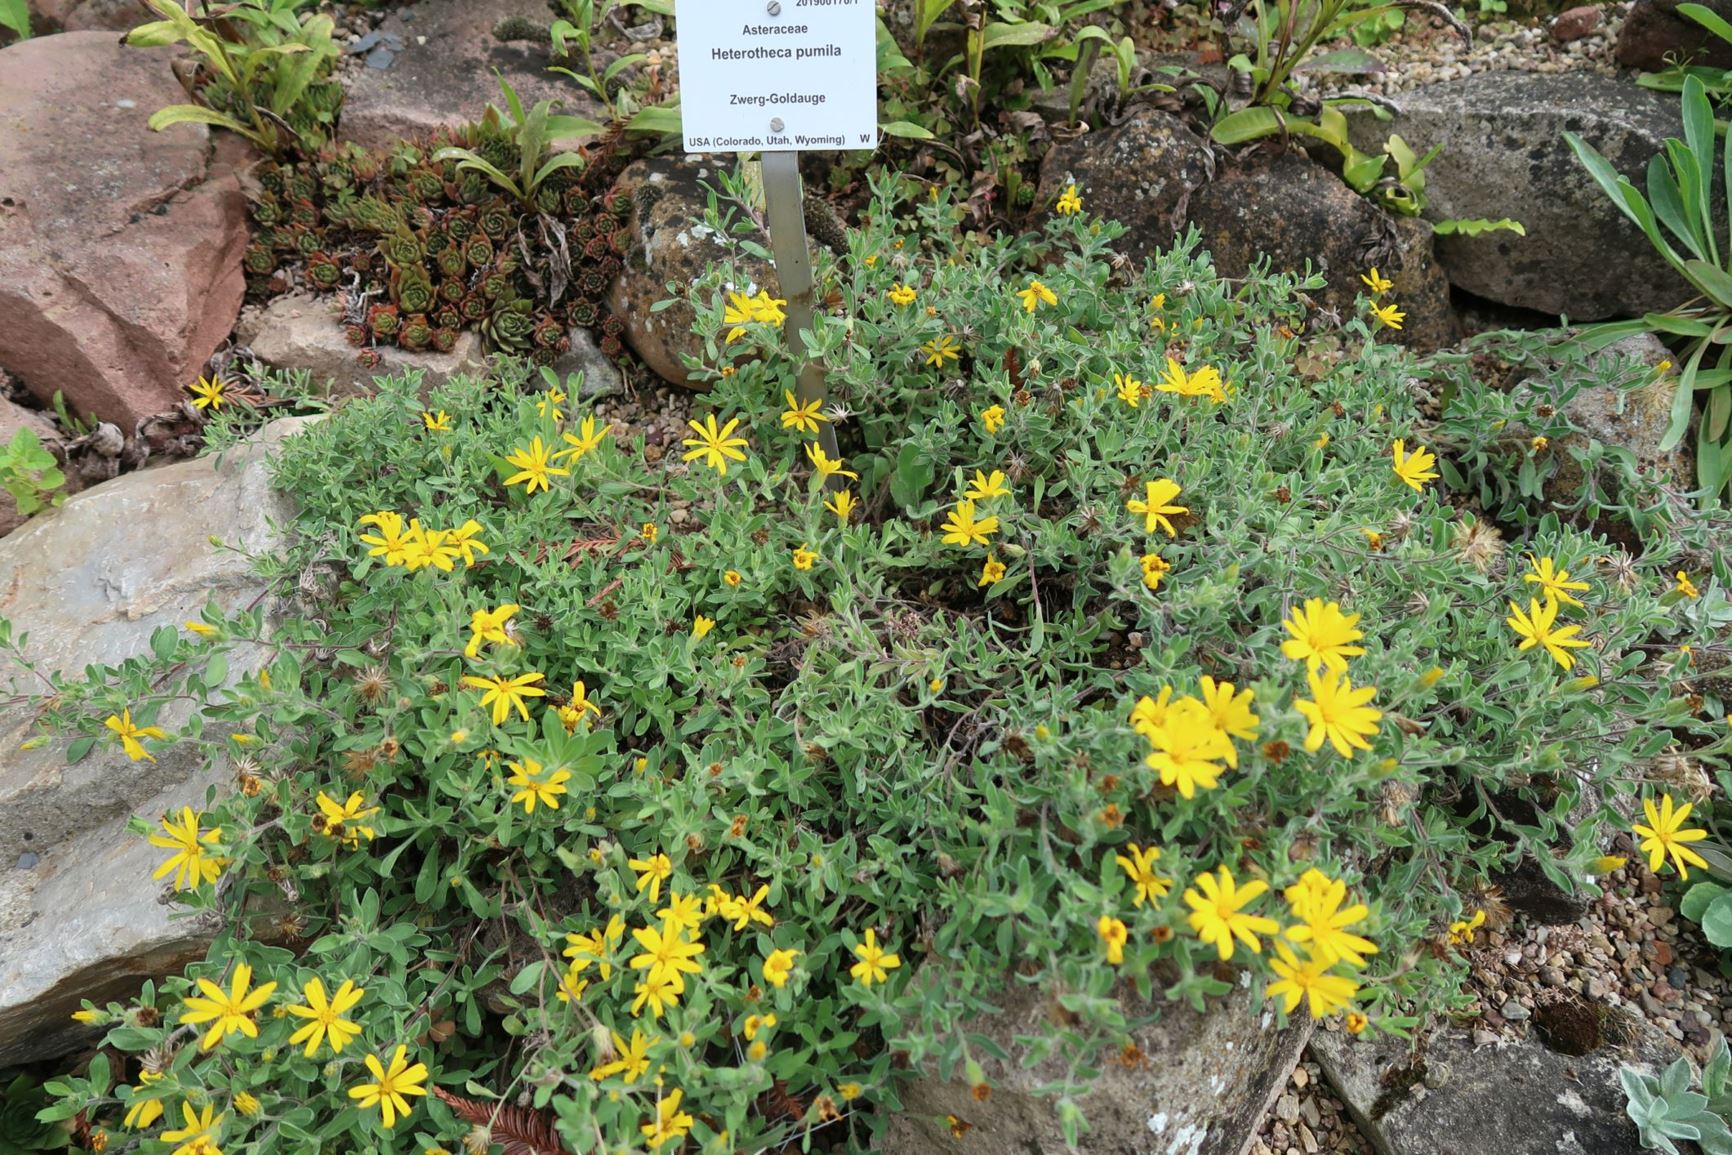 Heterotheca pumila - Zwerg-Goldauge, Alpine goldenaster